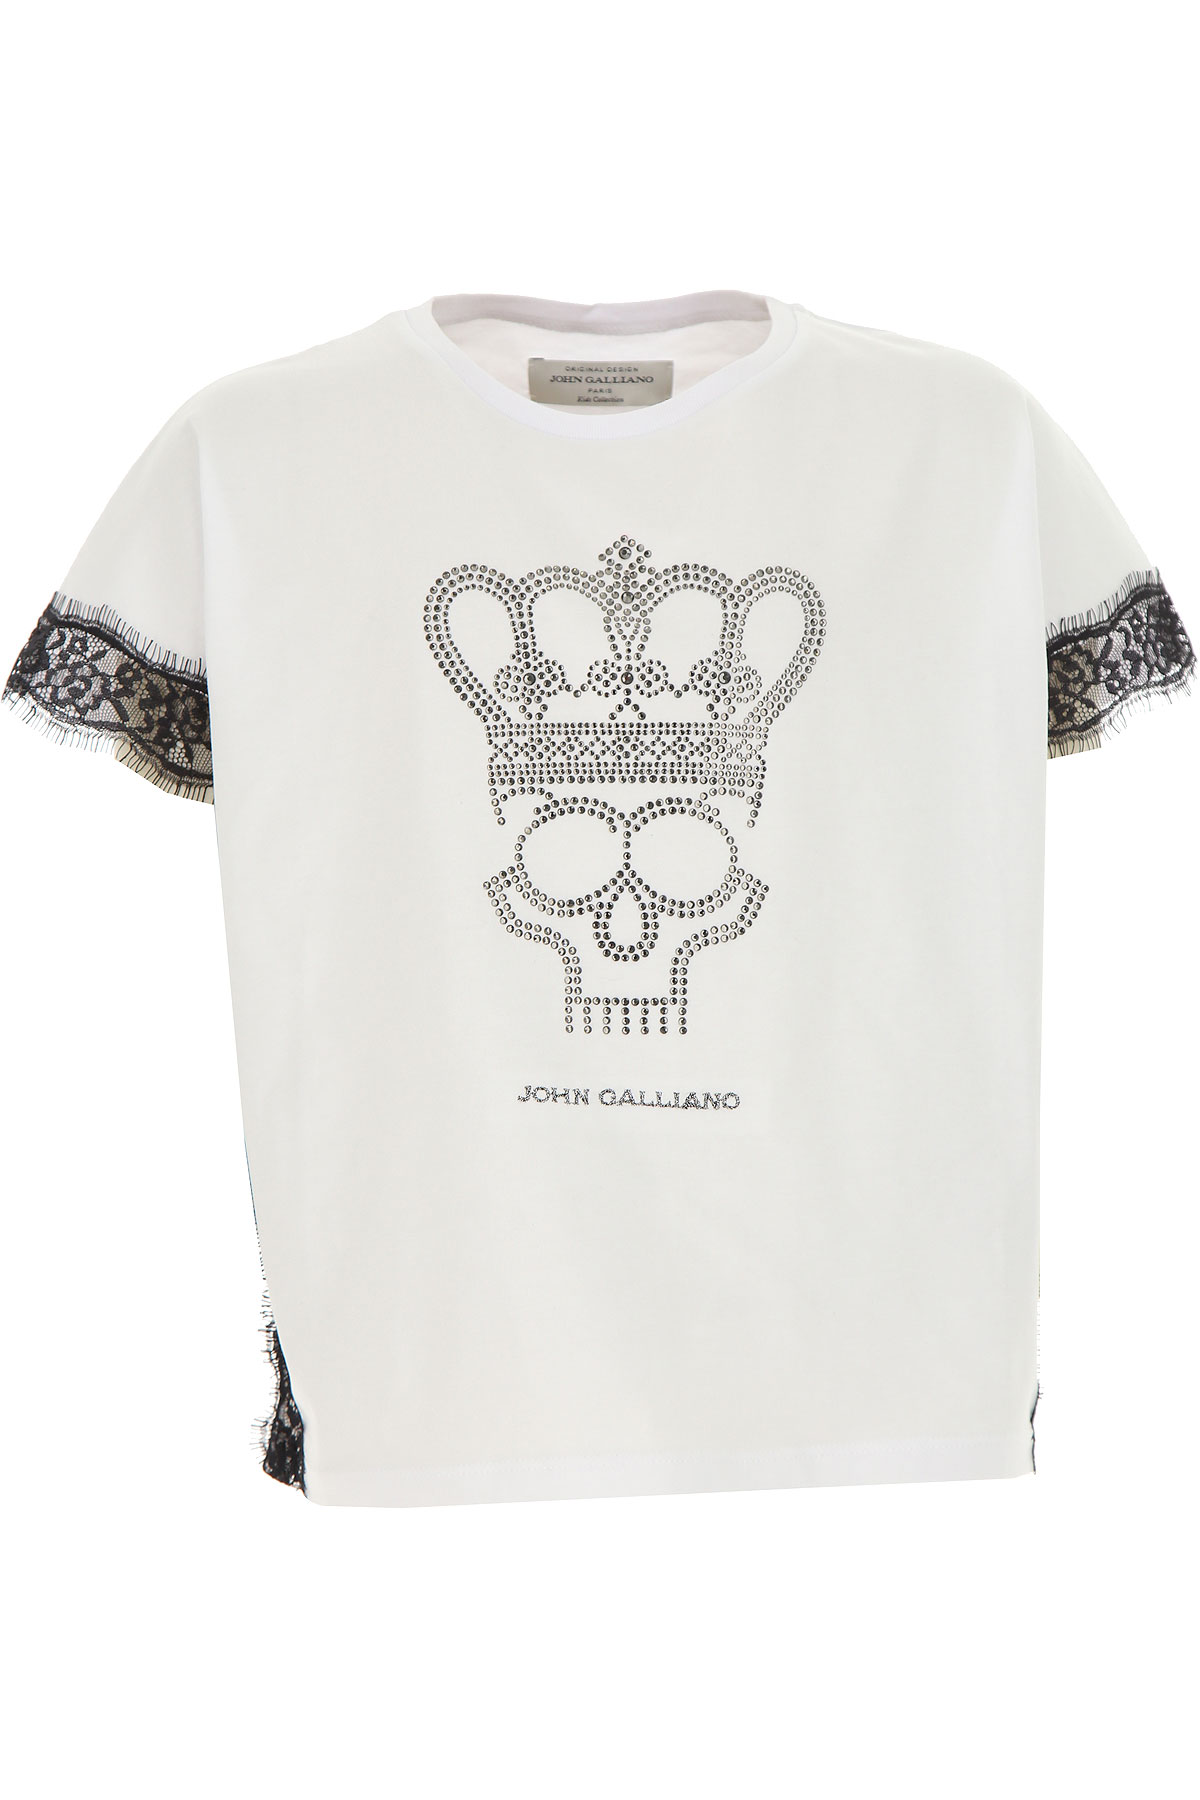 Galliano Kinder T-Shirt für Mädchen Günstig im Sale, Weiss, Baumwolle, 2017, 14Y 6Y 8Y